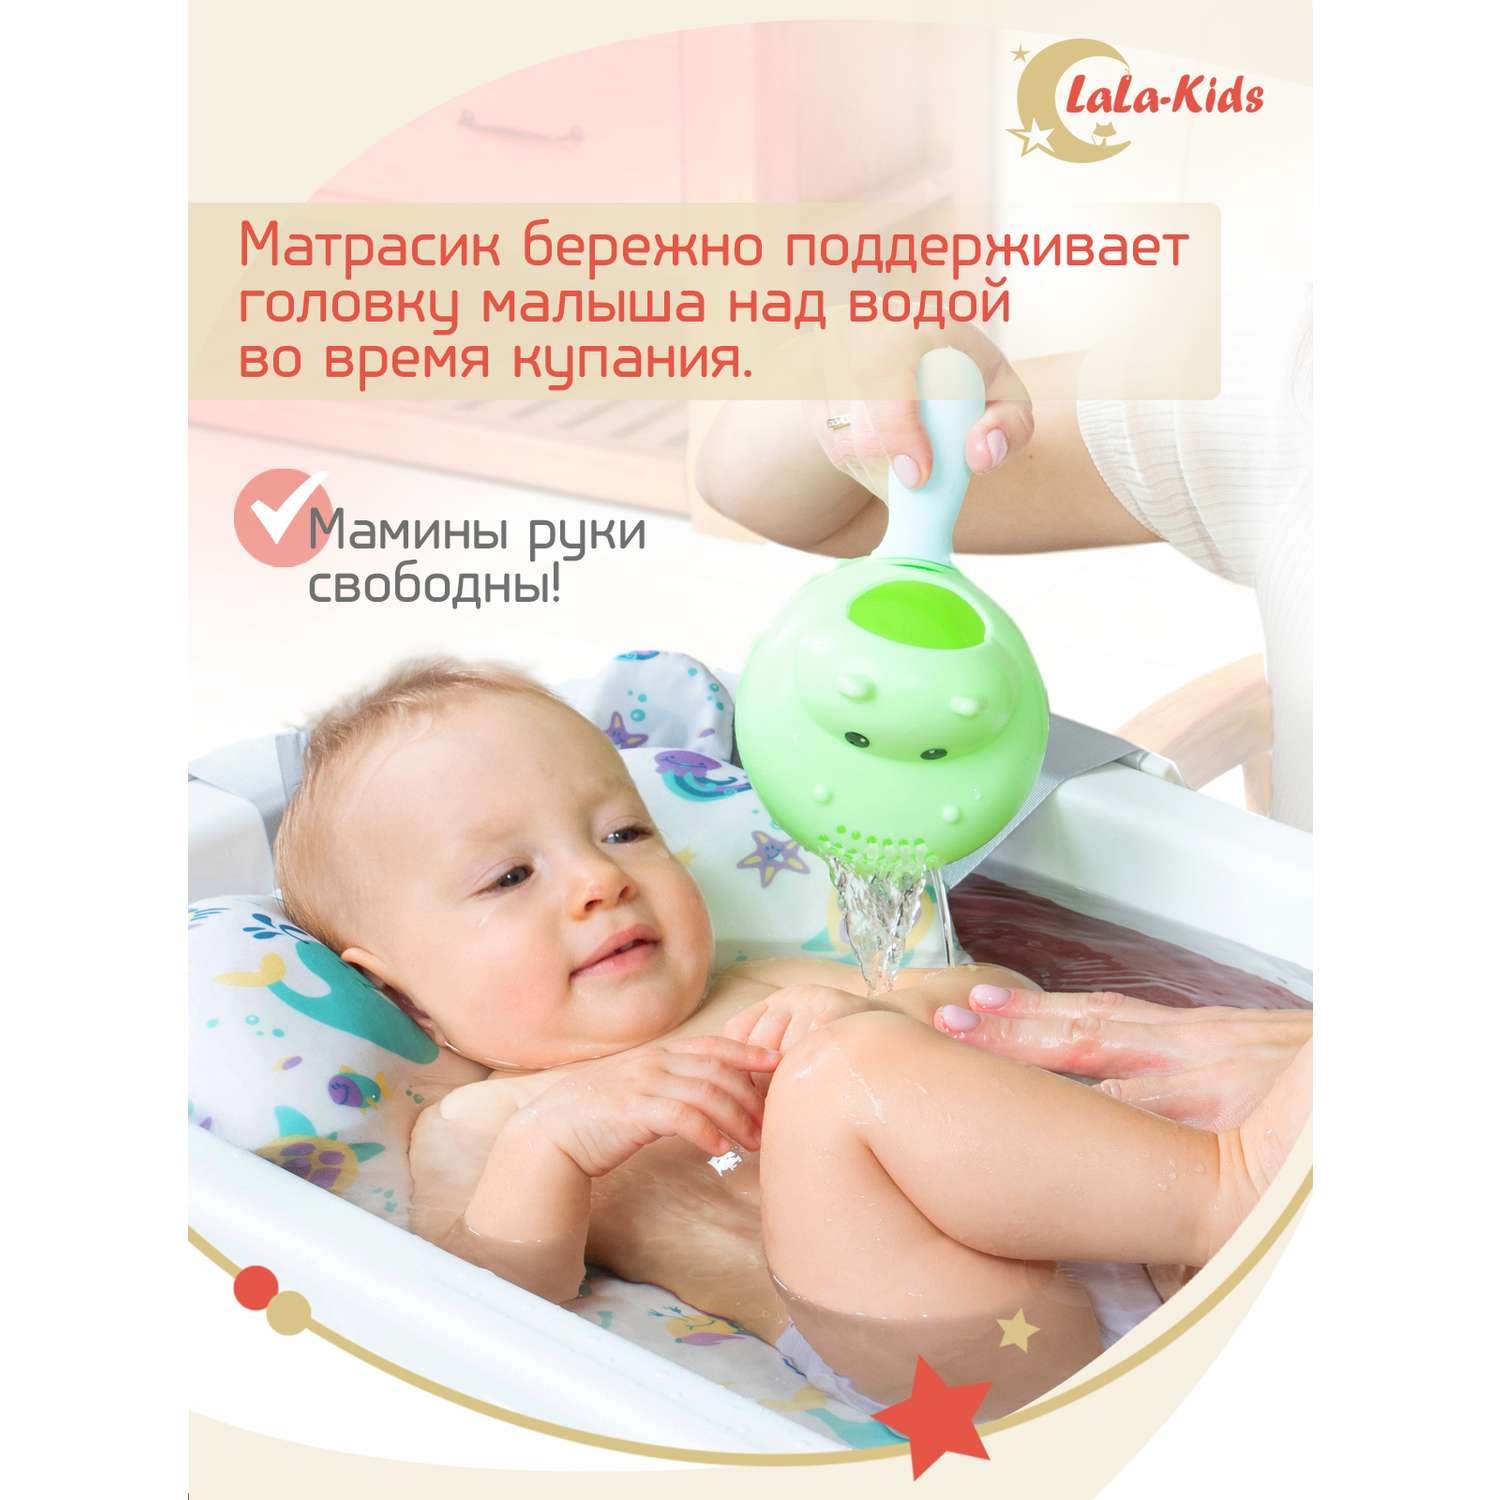 Детская ванночка с термометром LaLa-Kids складная для купания новорожденных с термометром и матрасиком в комплекте - фото 10